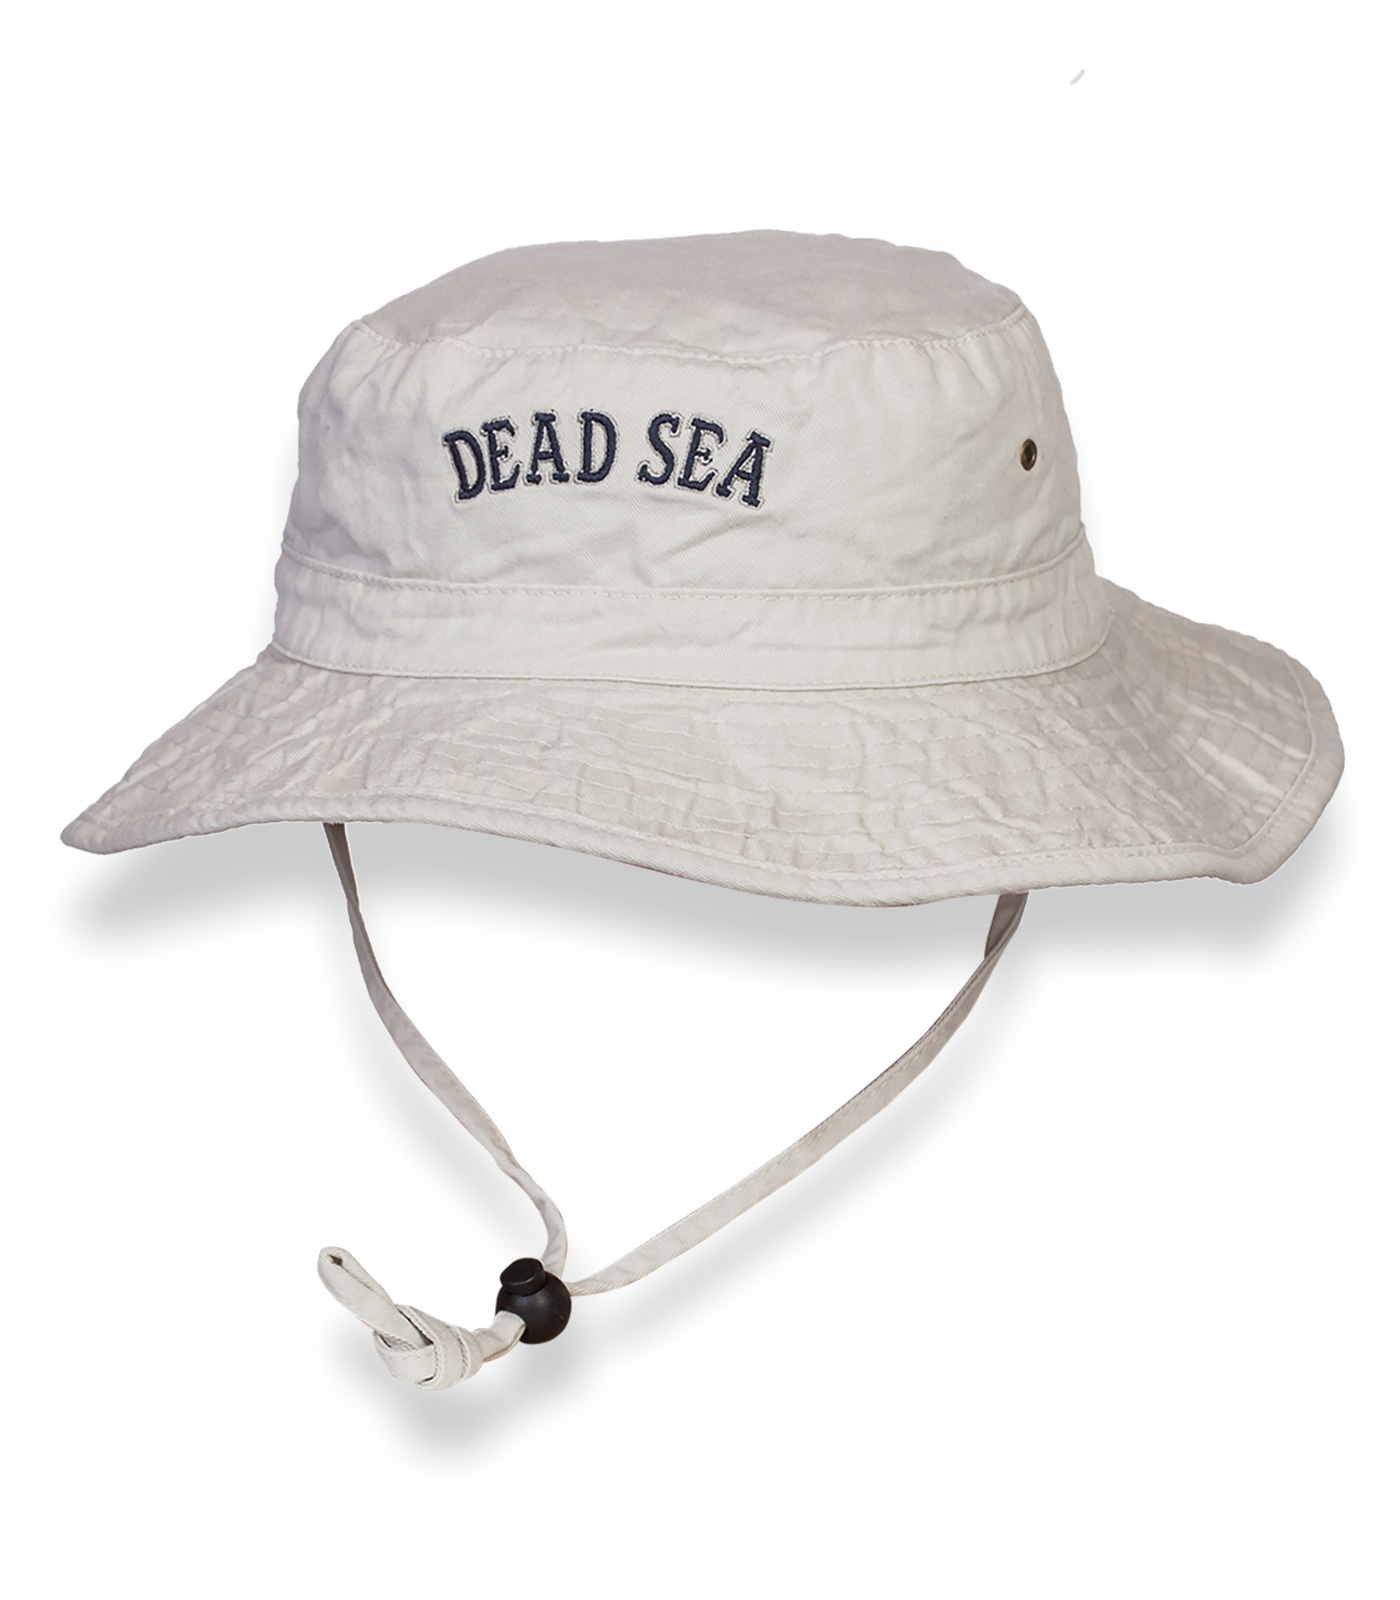 Купить оригинальную белую шляпу Dead Sea по экономичной цене